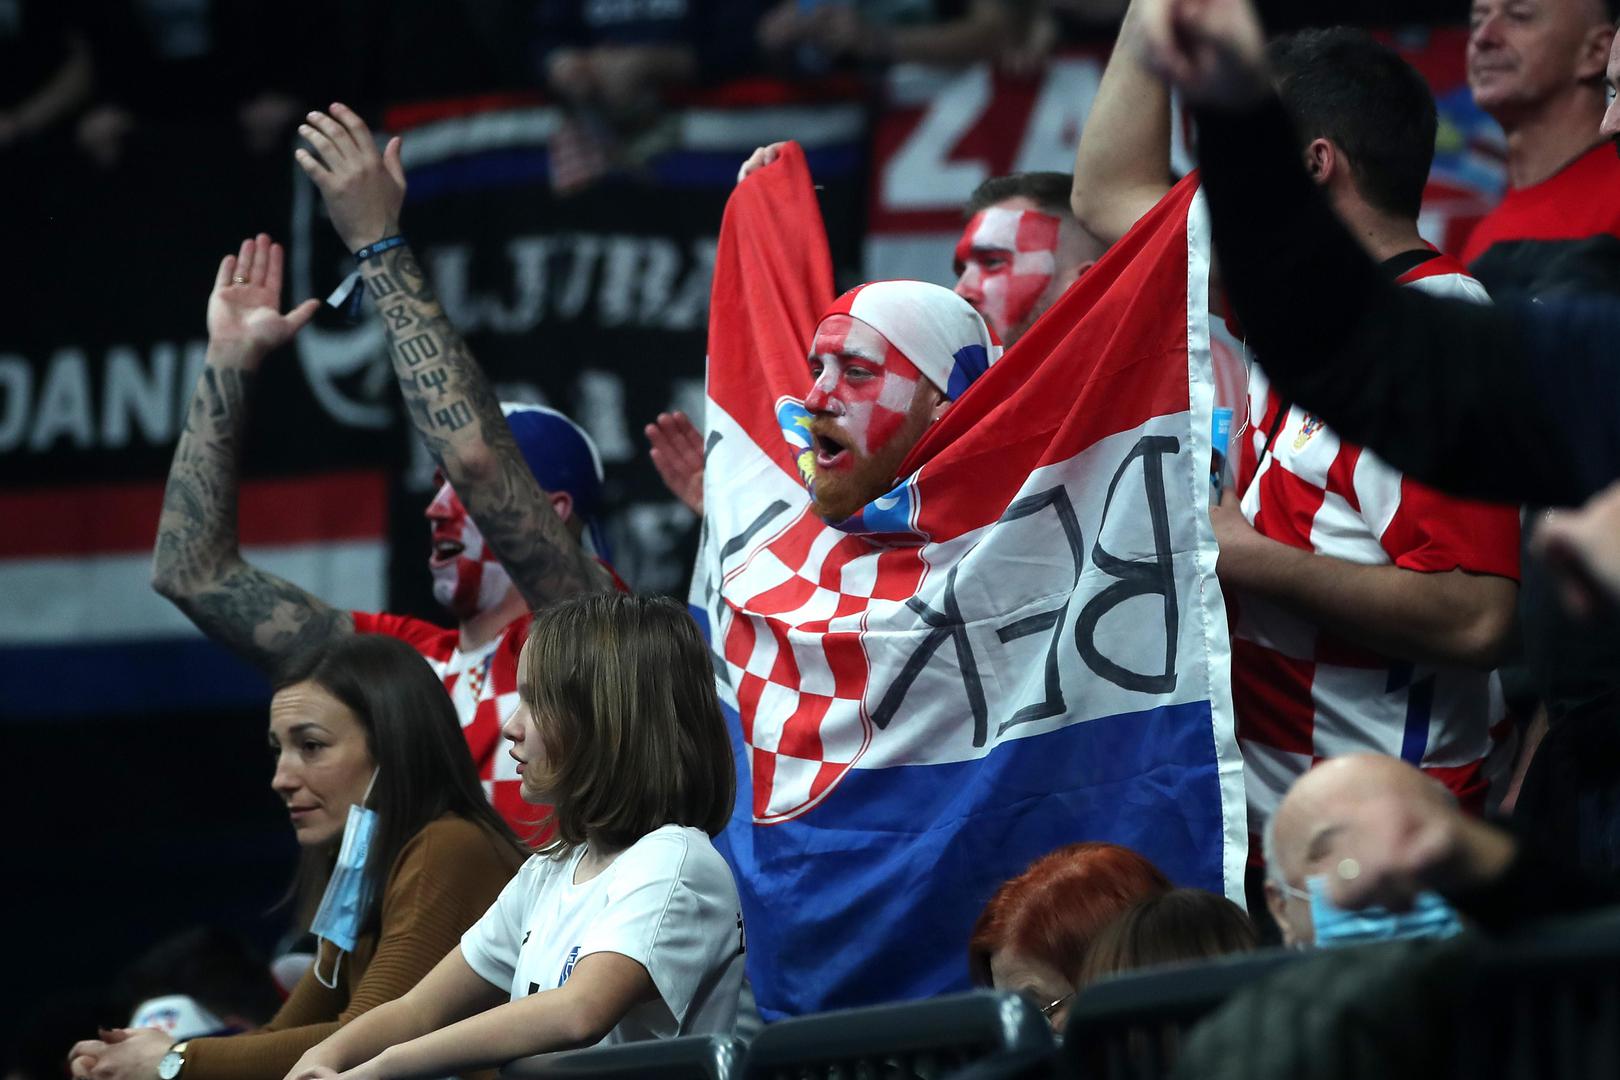 Nešto više ima hrvatskih navijača koji od prve minute bodre kauboje.